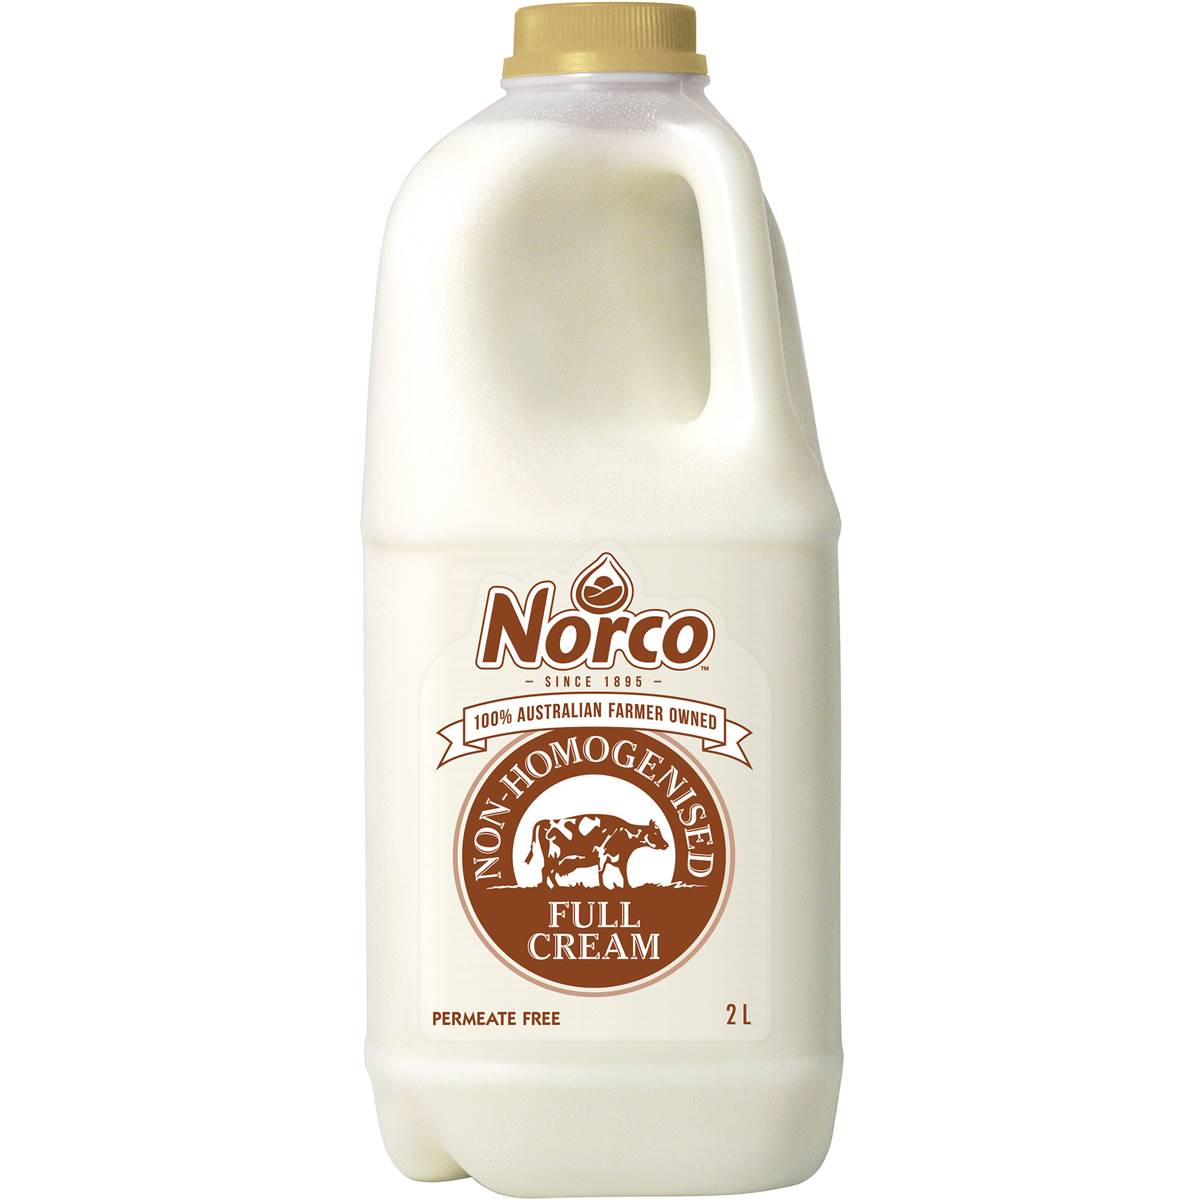 Norco Non-homogenised Full Cream Milk -2L